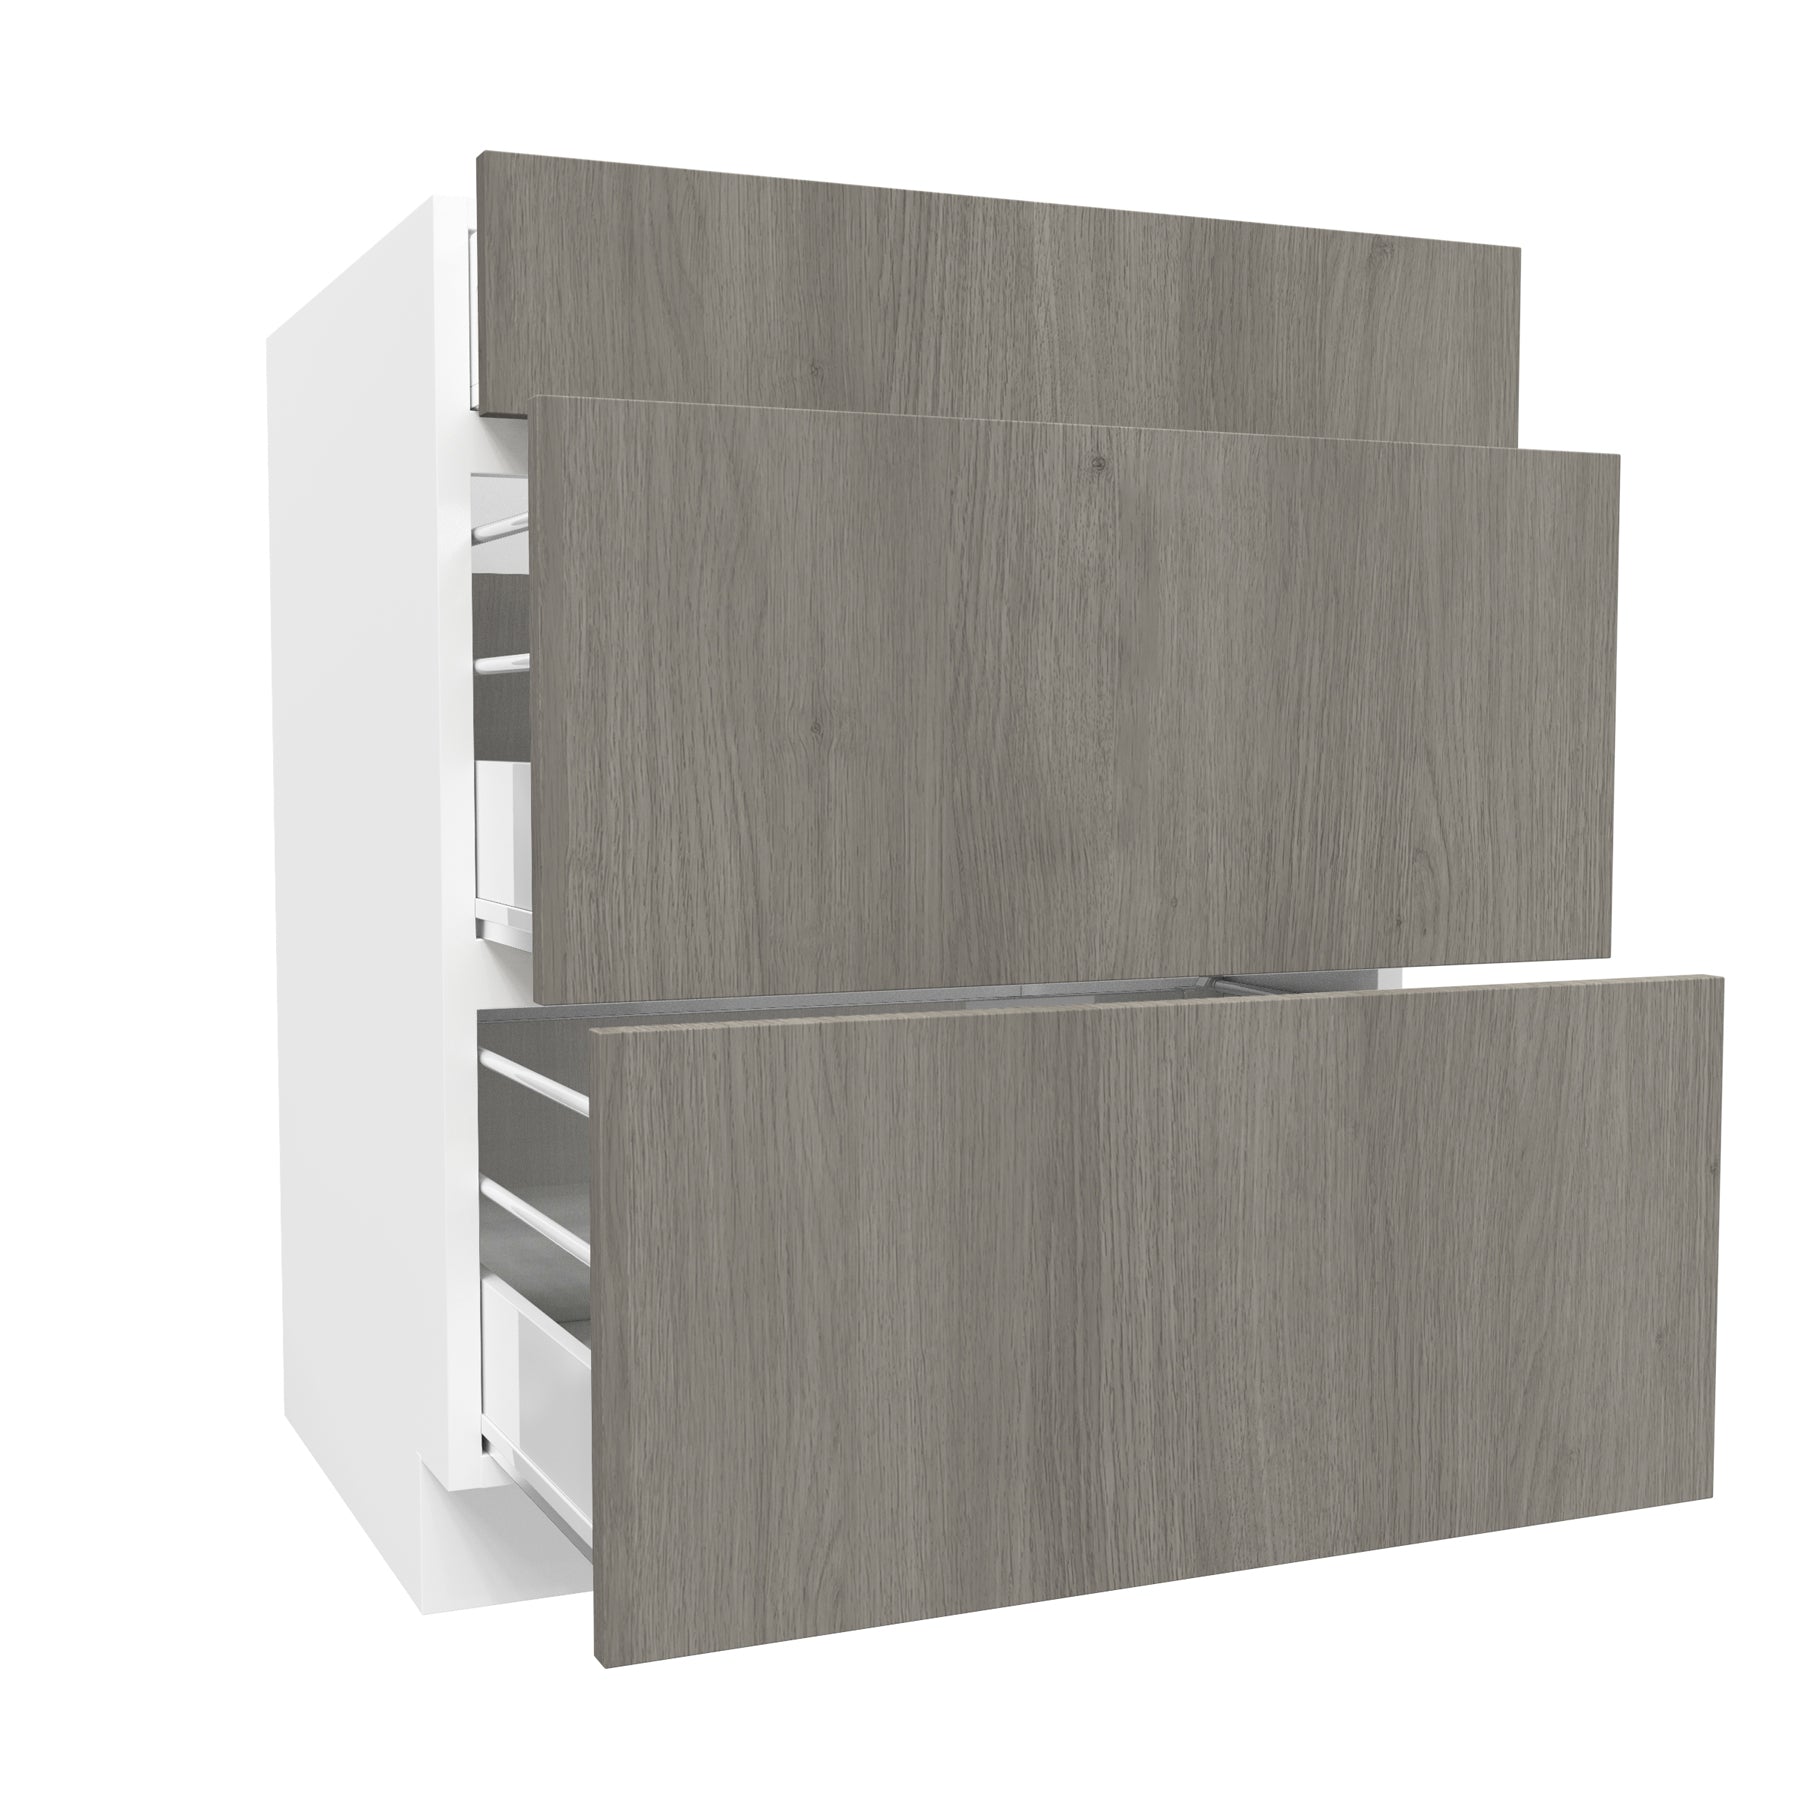 3 Drawer Base Cabinet| Matrix Silver | 27W x 34.5H x 24D